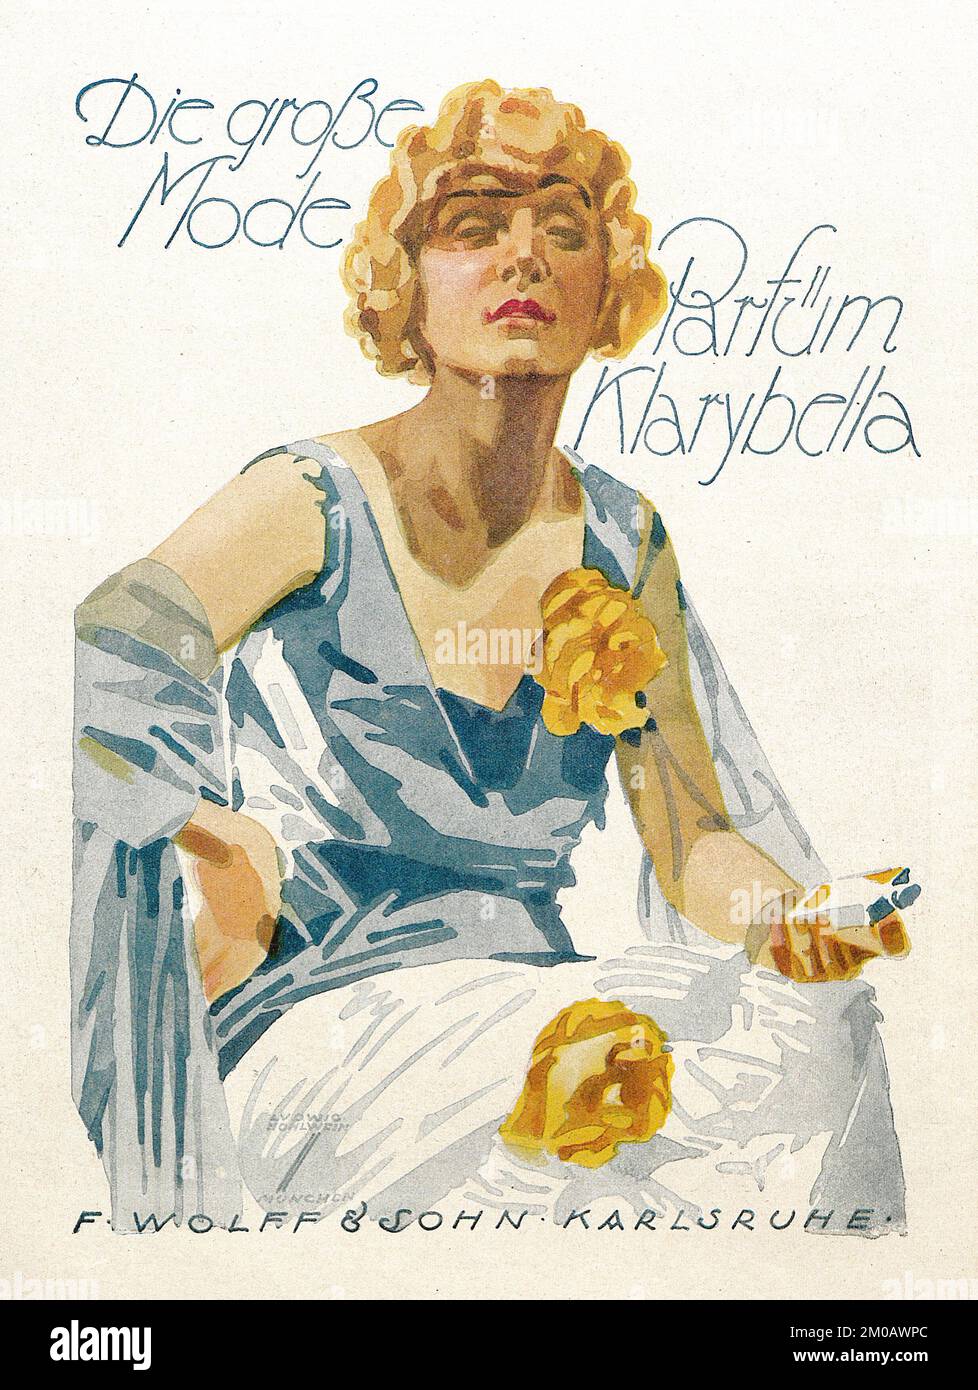 Cartel publicitario alemán de Ludwig Hohlwein - Parfüm Klarybella, 1924 Foto de stock